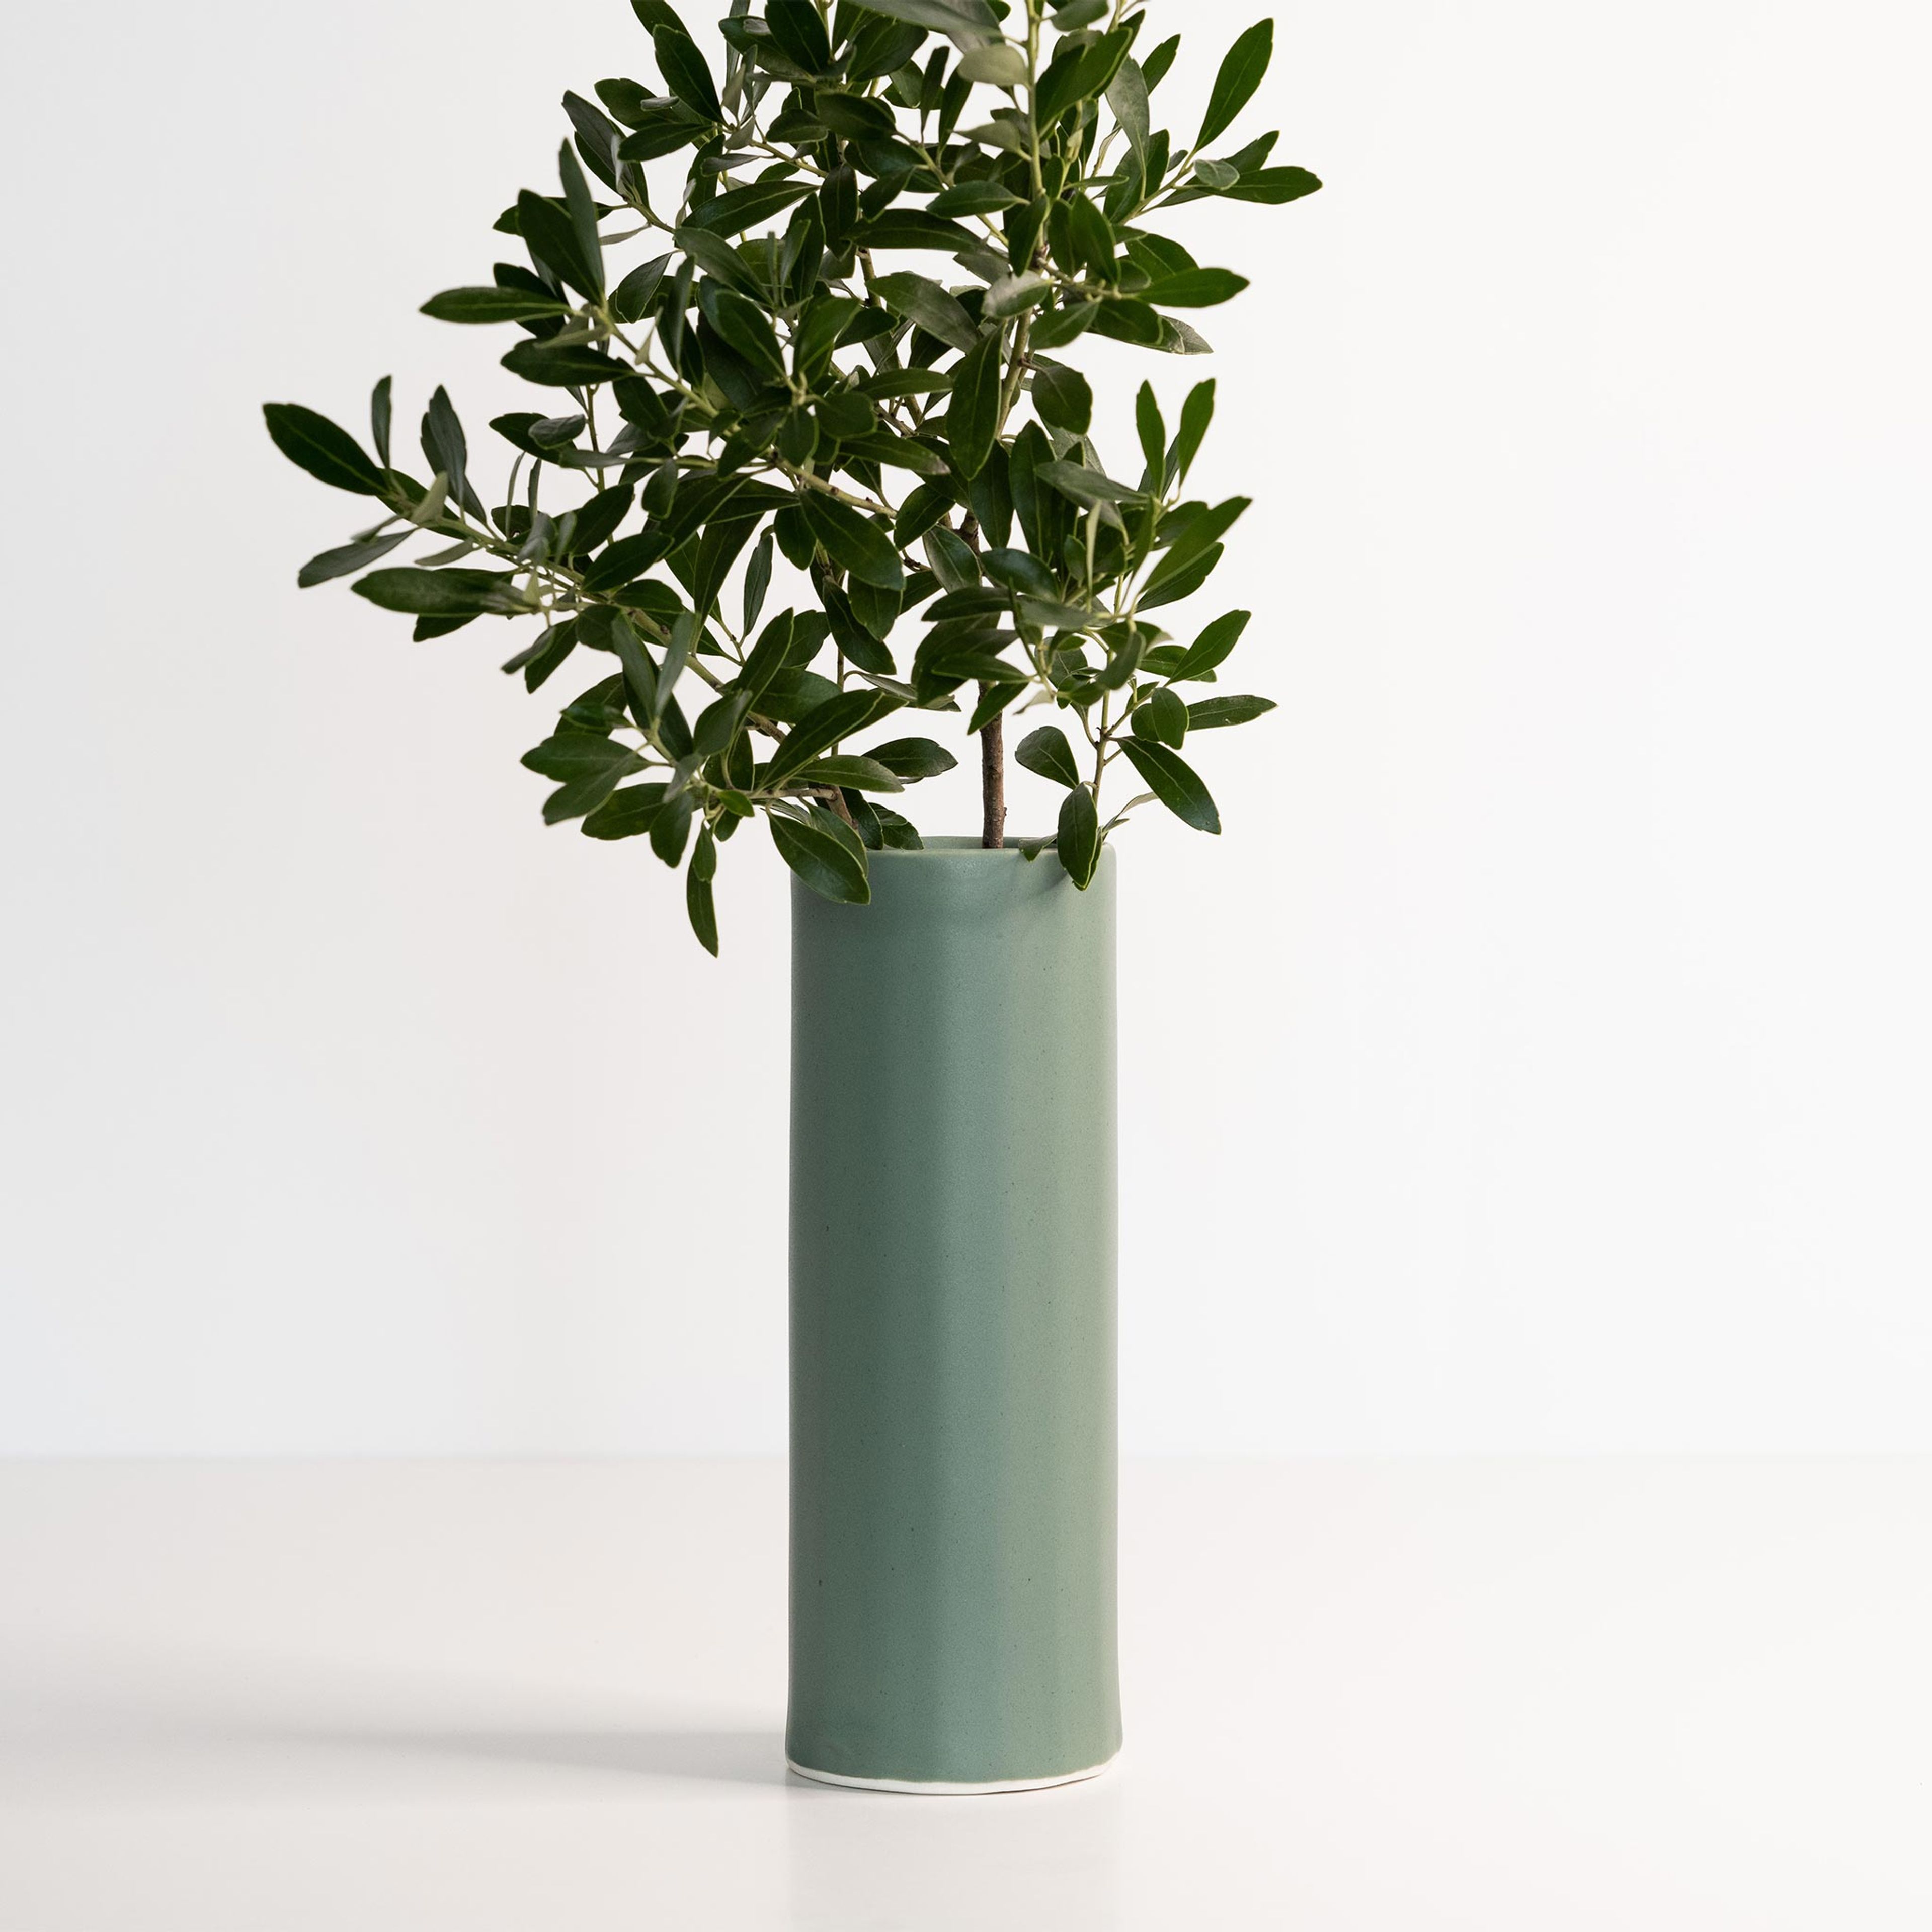 Bloom Vase - Handmade Porcelain Flower Vase